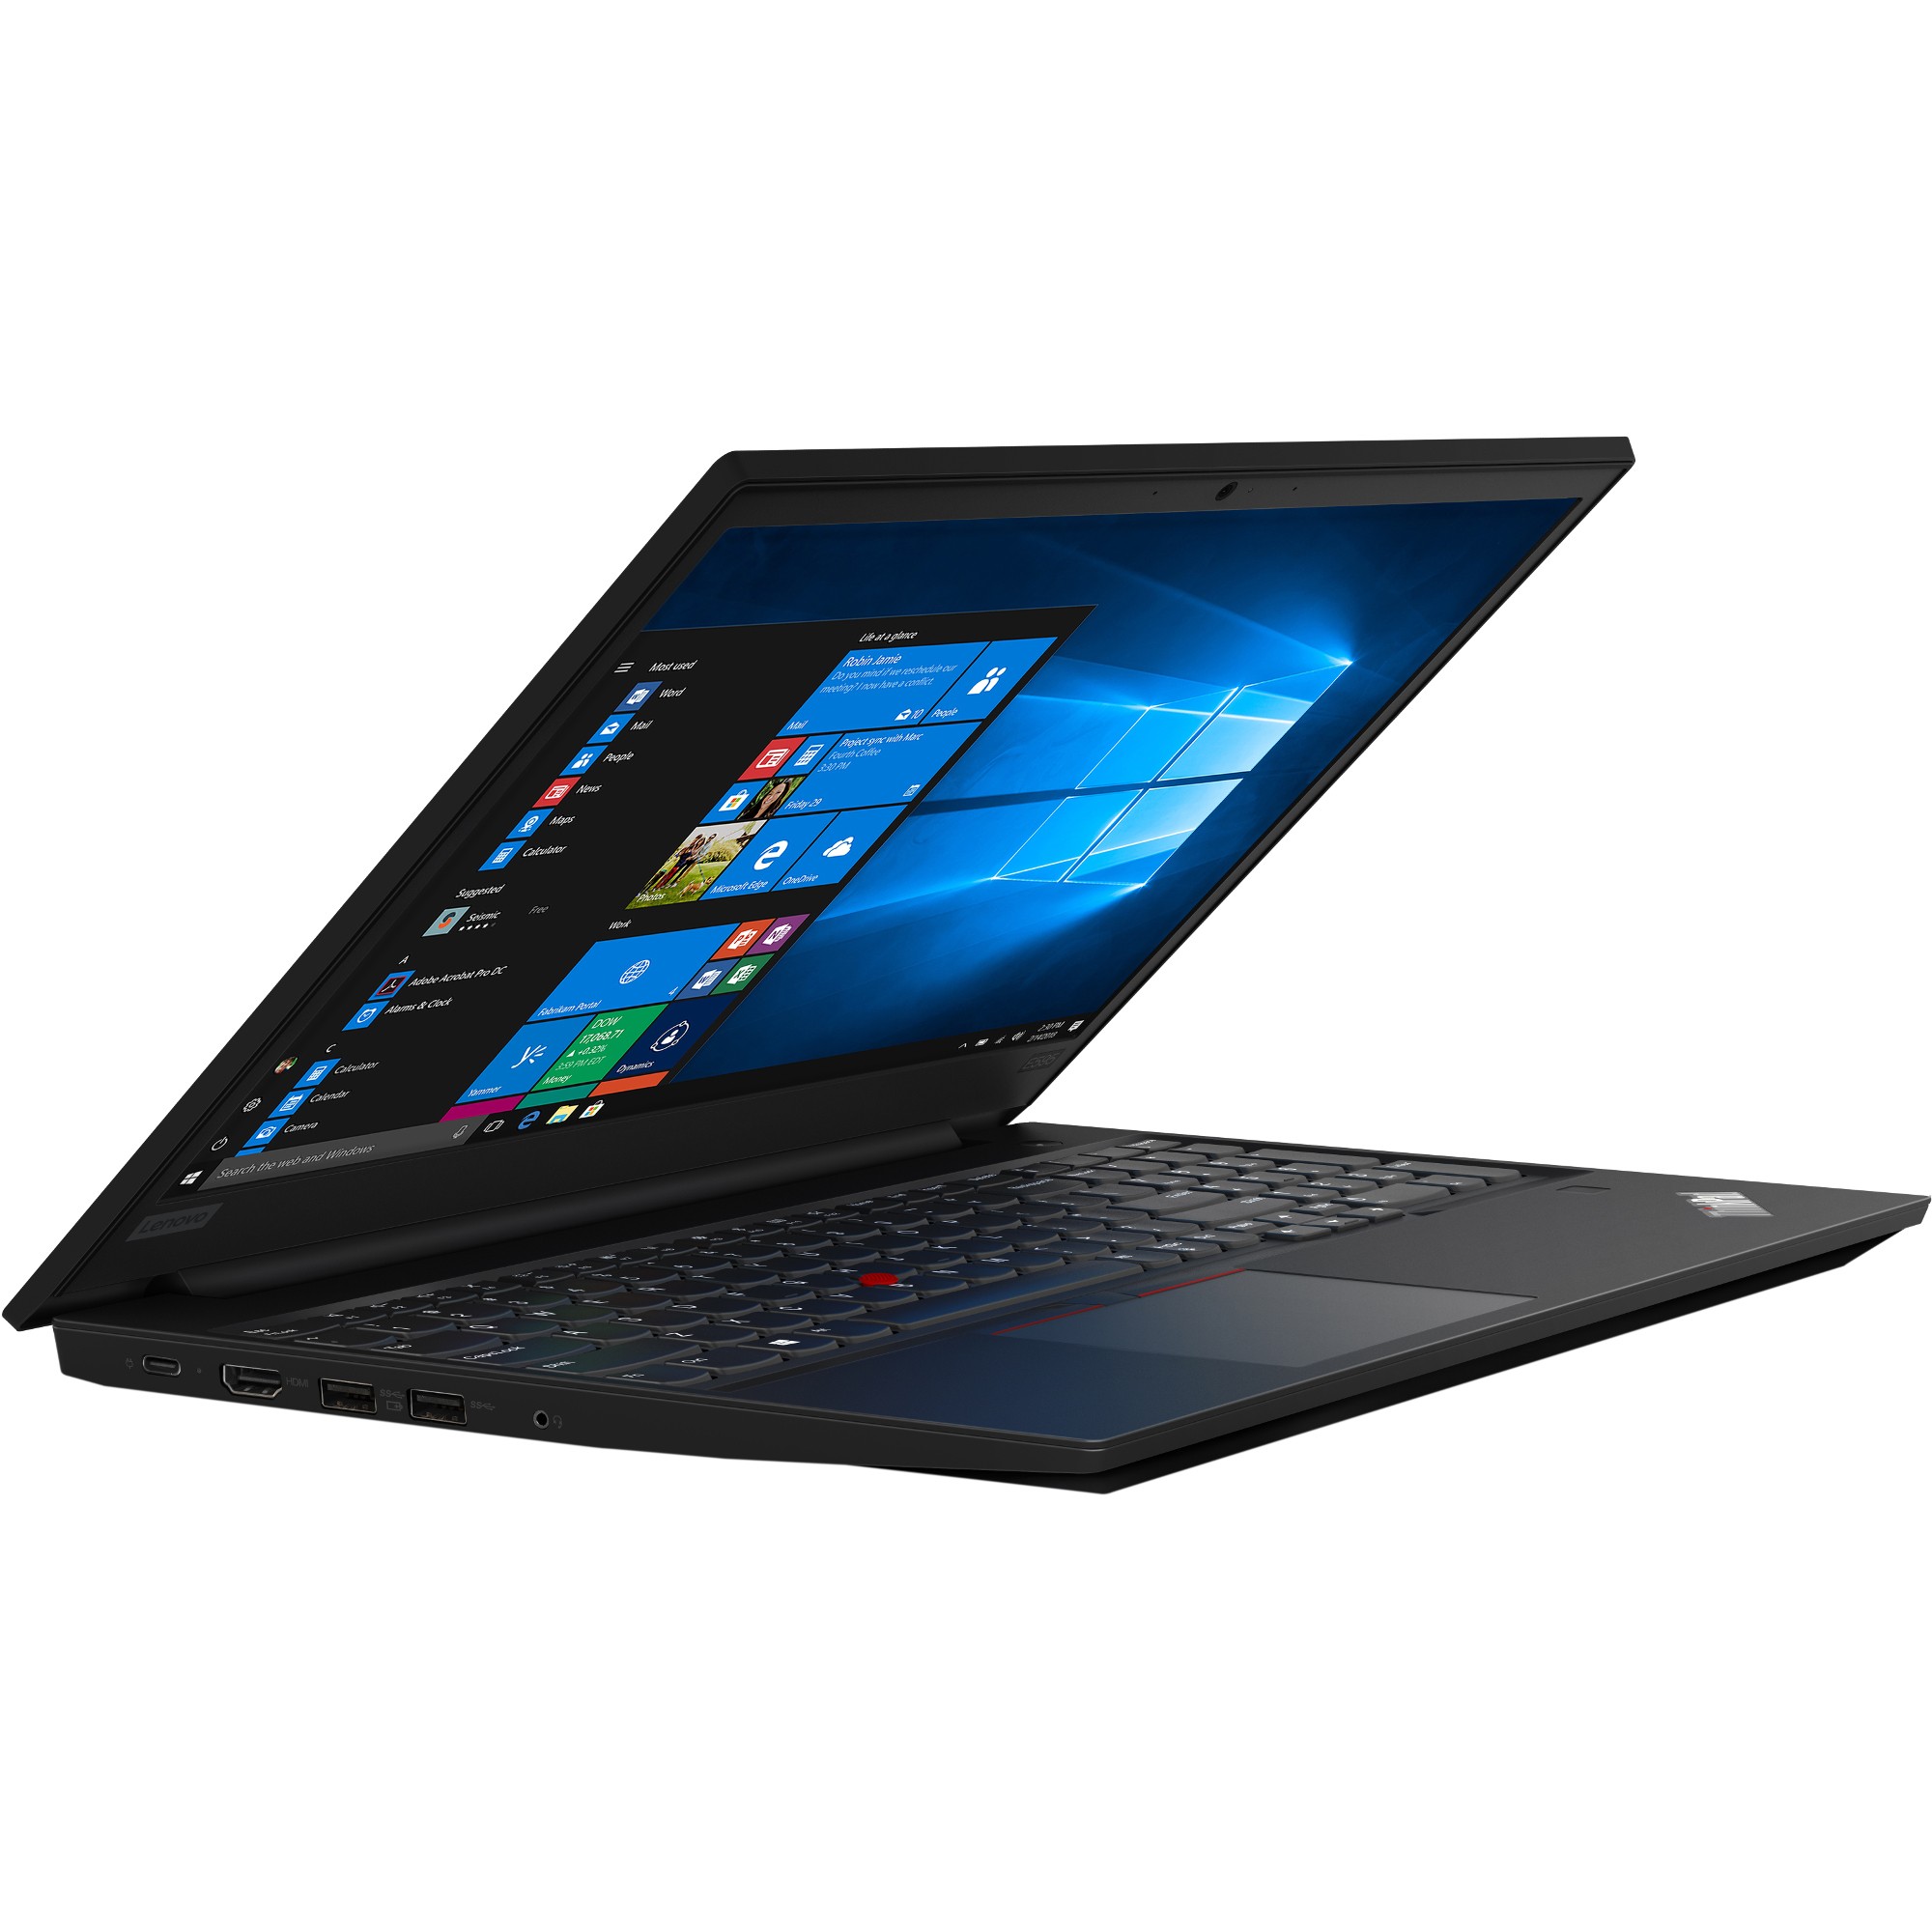 Lenovo ThinkPad E595 15.6" FHD AMD Ryzen 7 3700U 2.3GHz 8GB 256GB SSD W10P